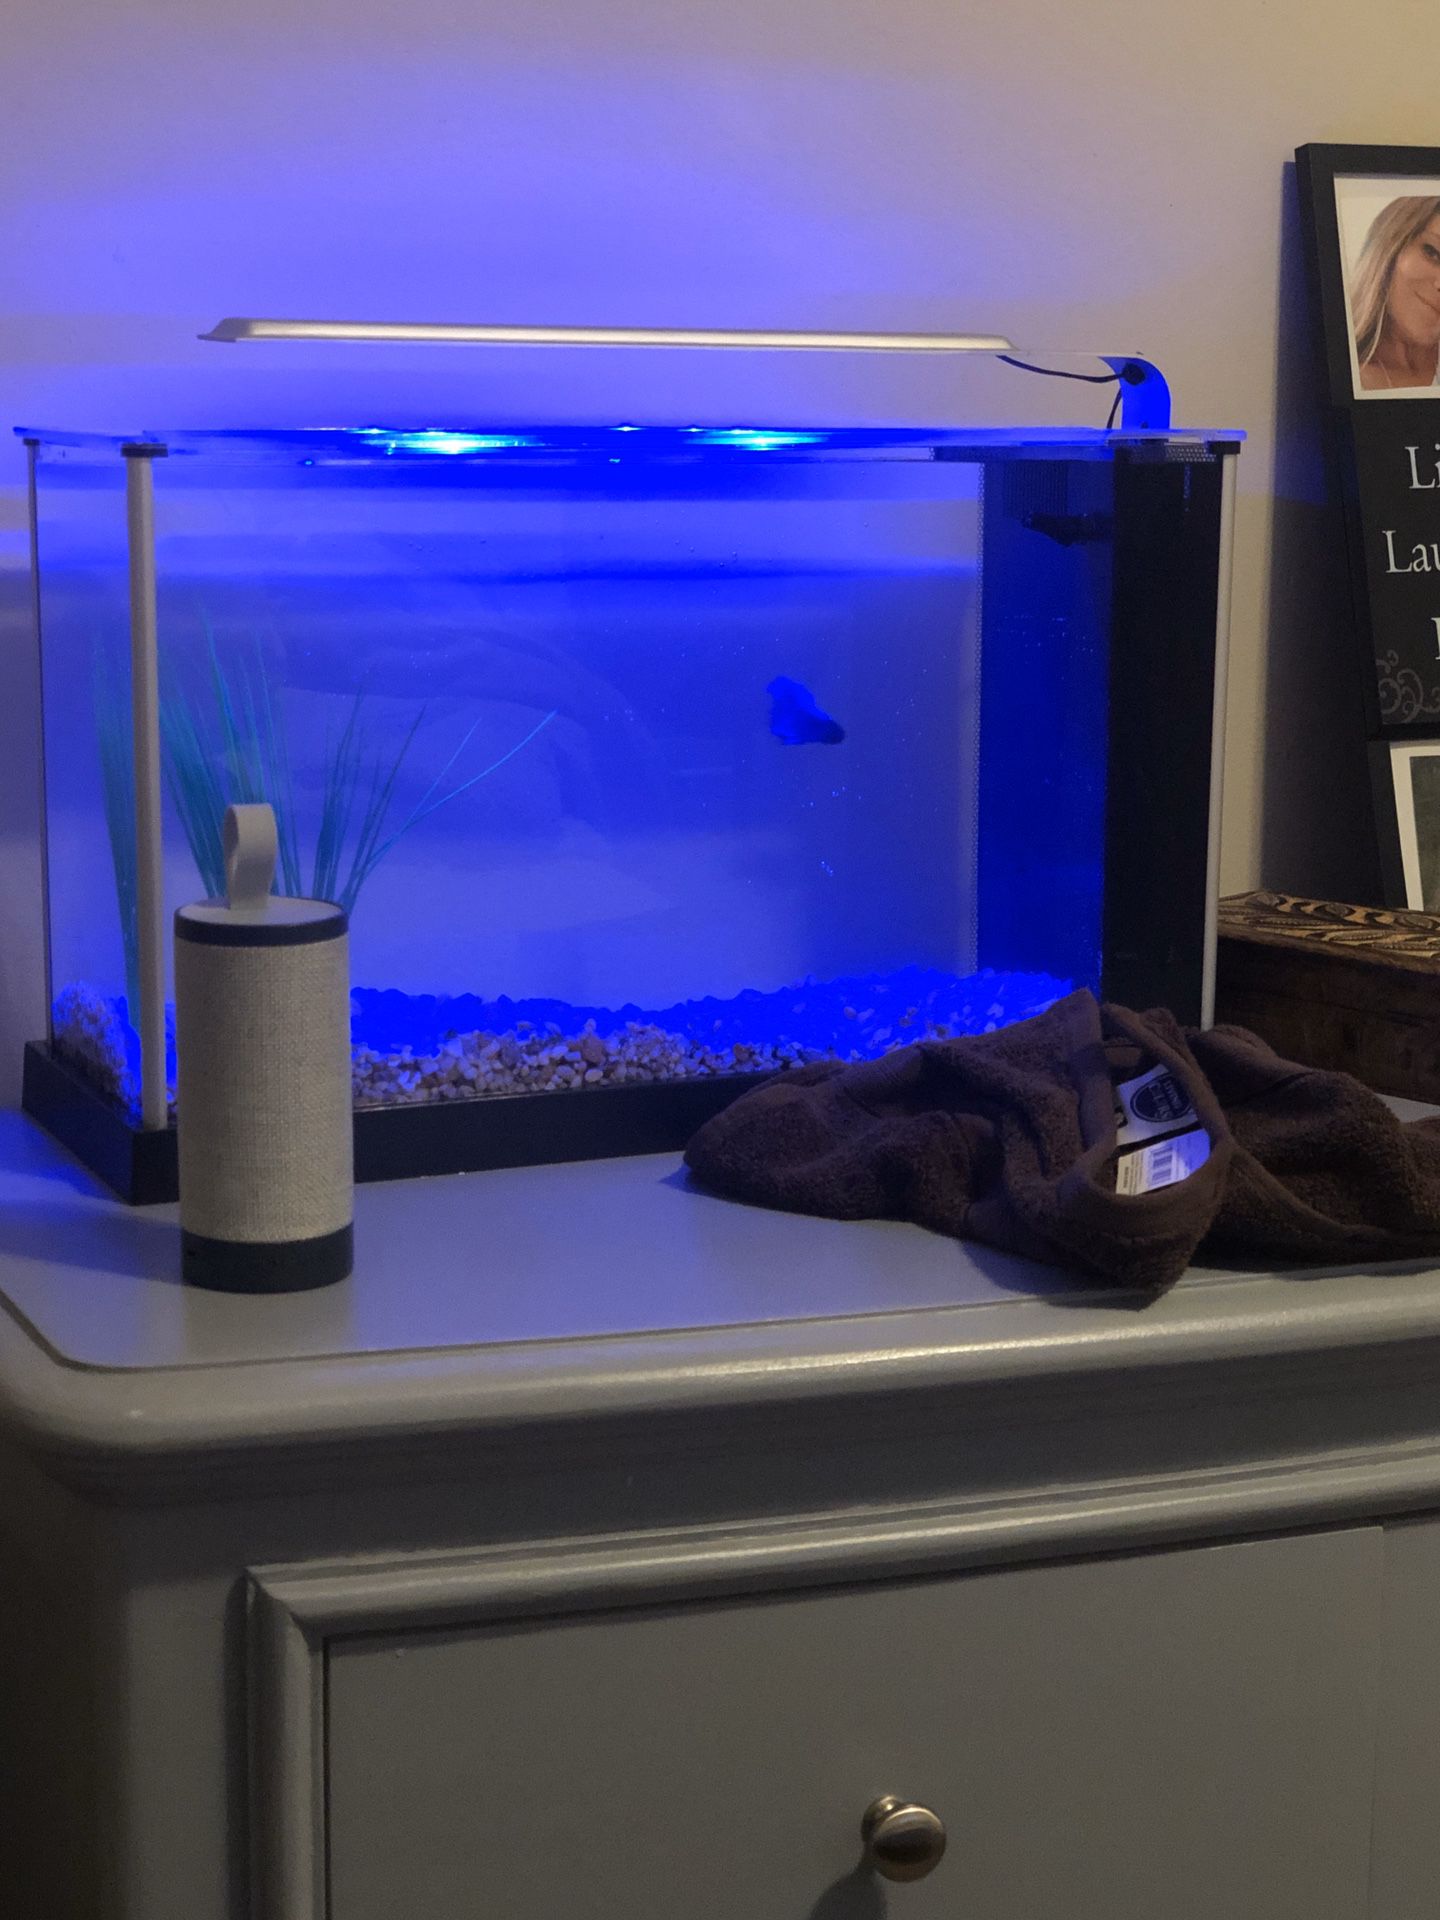 Fluval fish tank